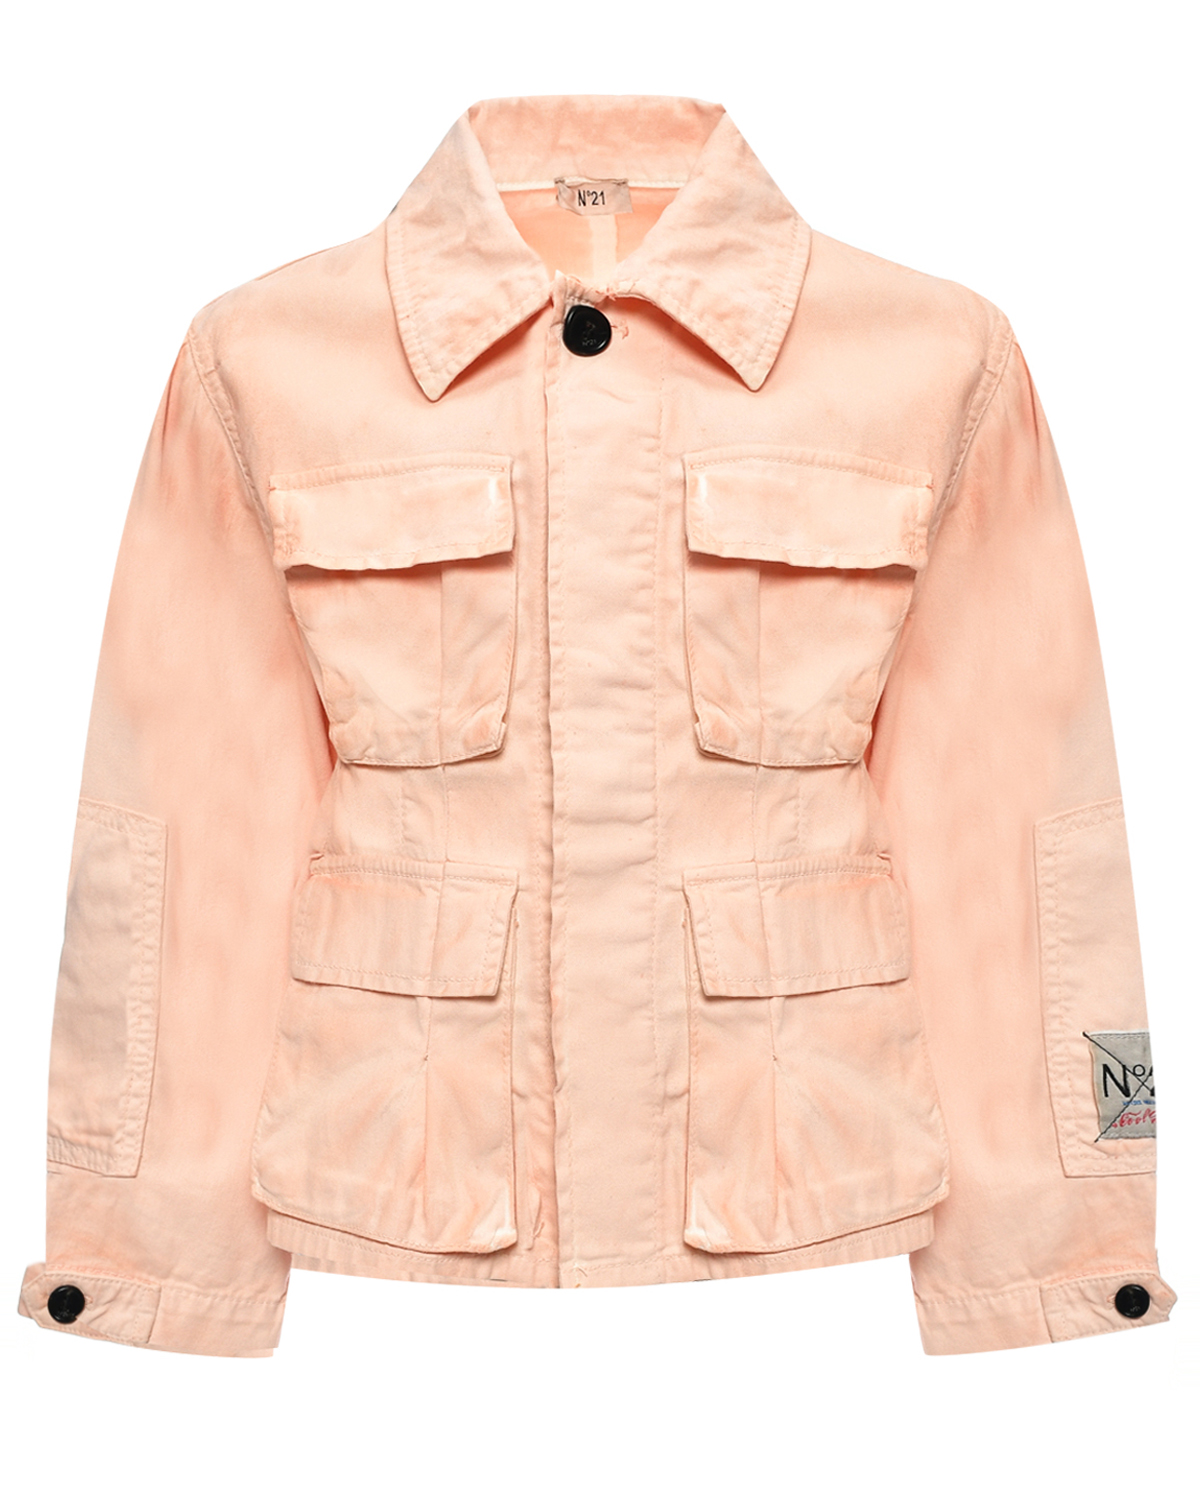 Джинсовая куртка с накладными карманами, розовая No. 21, размер 140, цвет нет цвета - фото 1